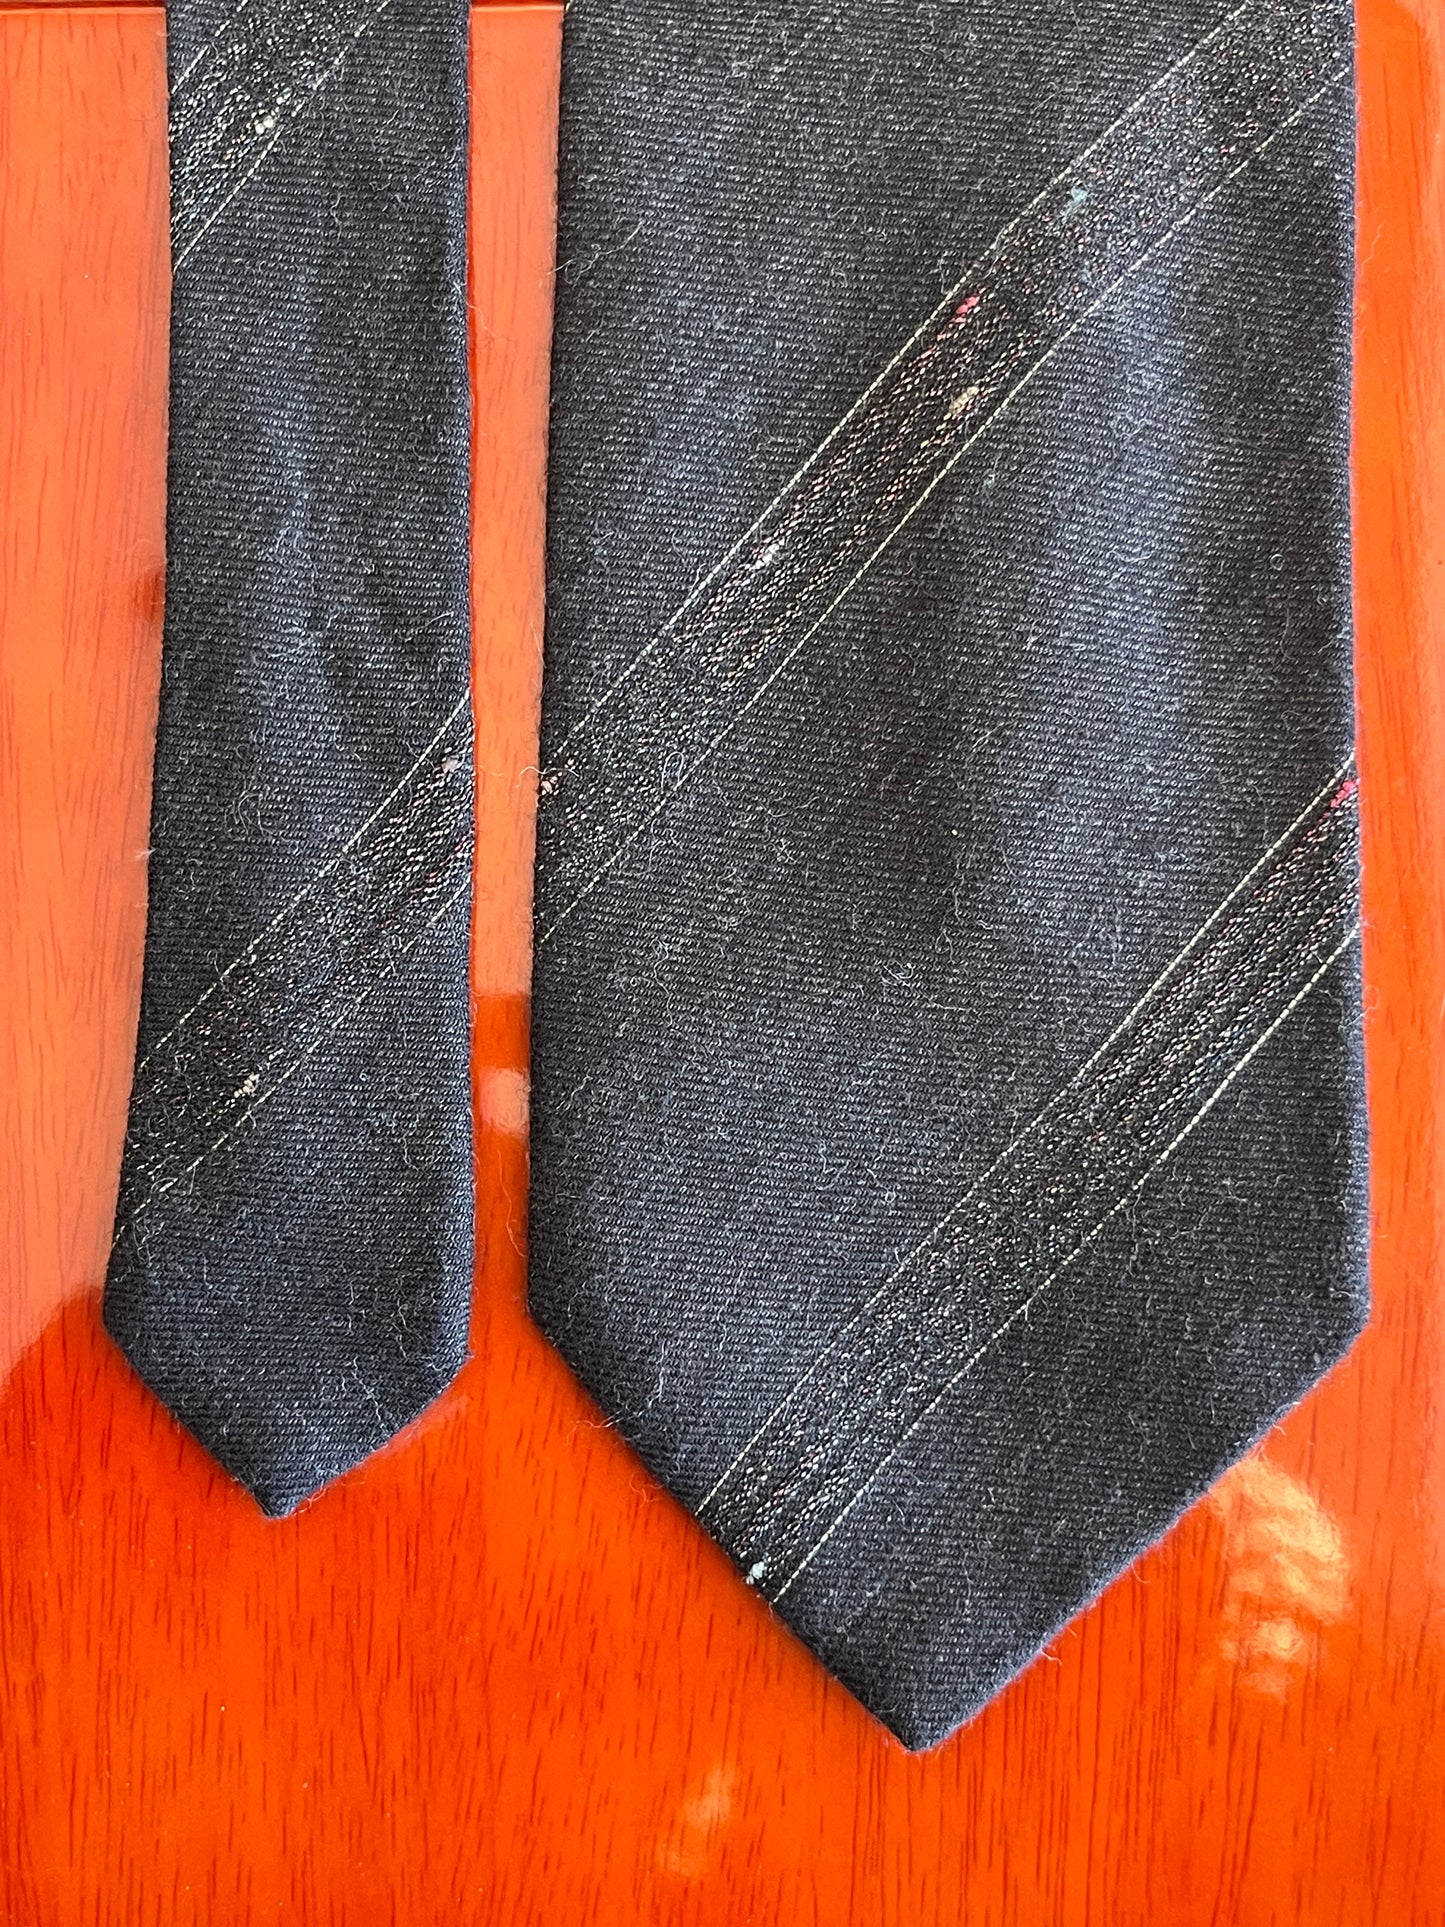 Cravatta anni ‘90 lana